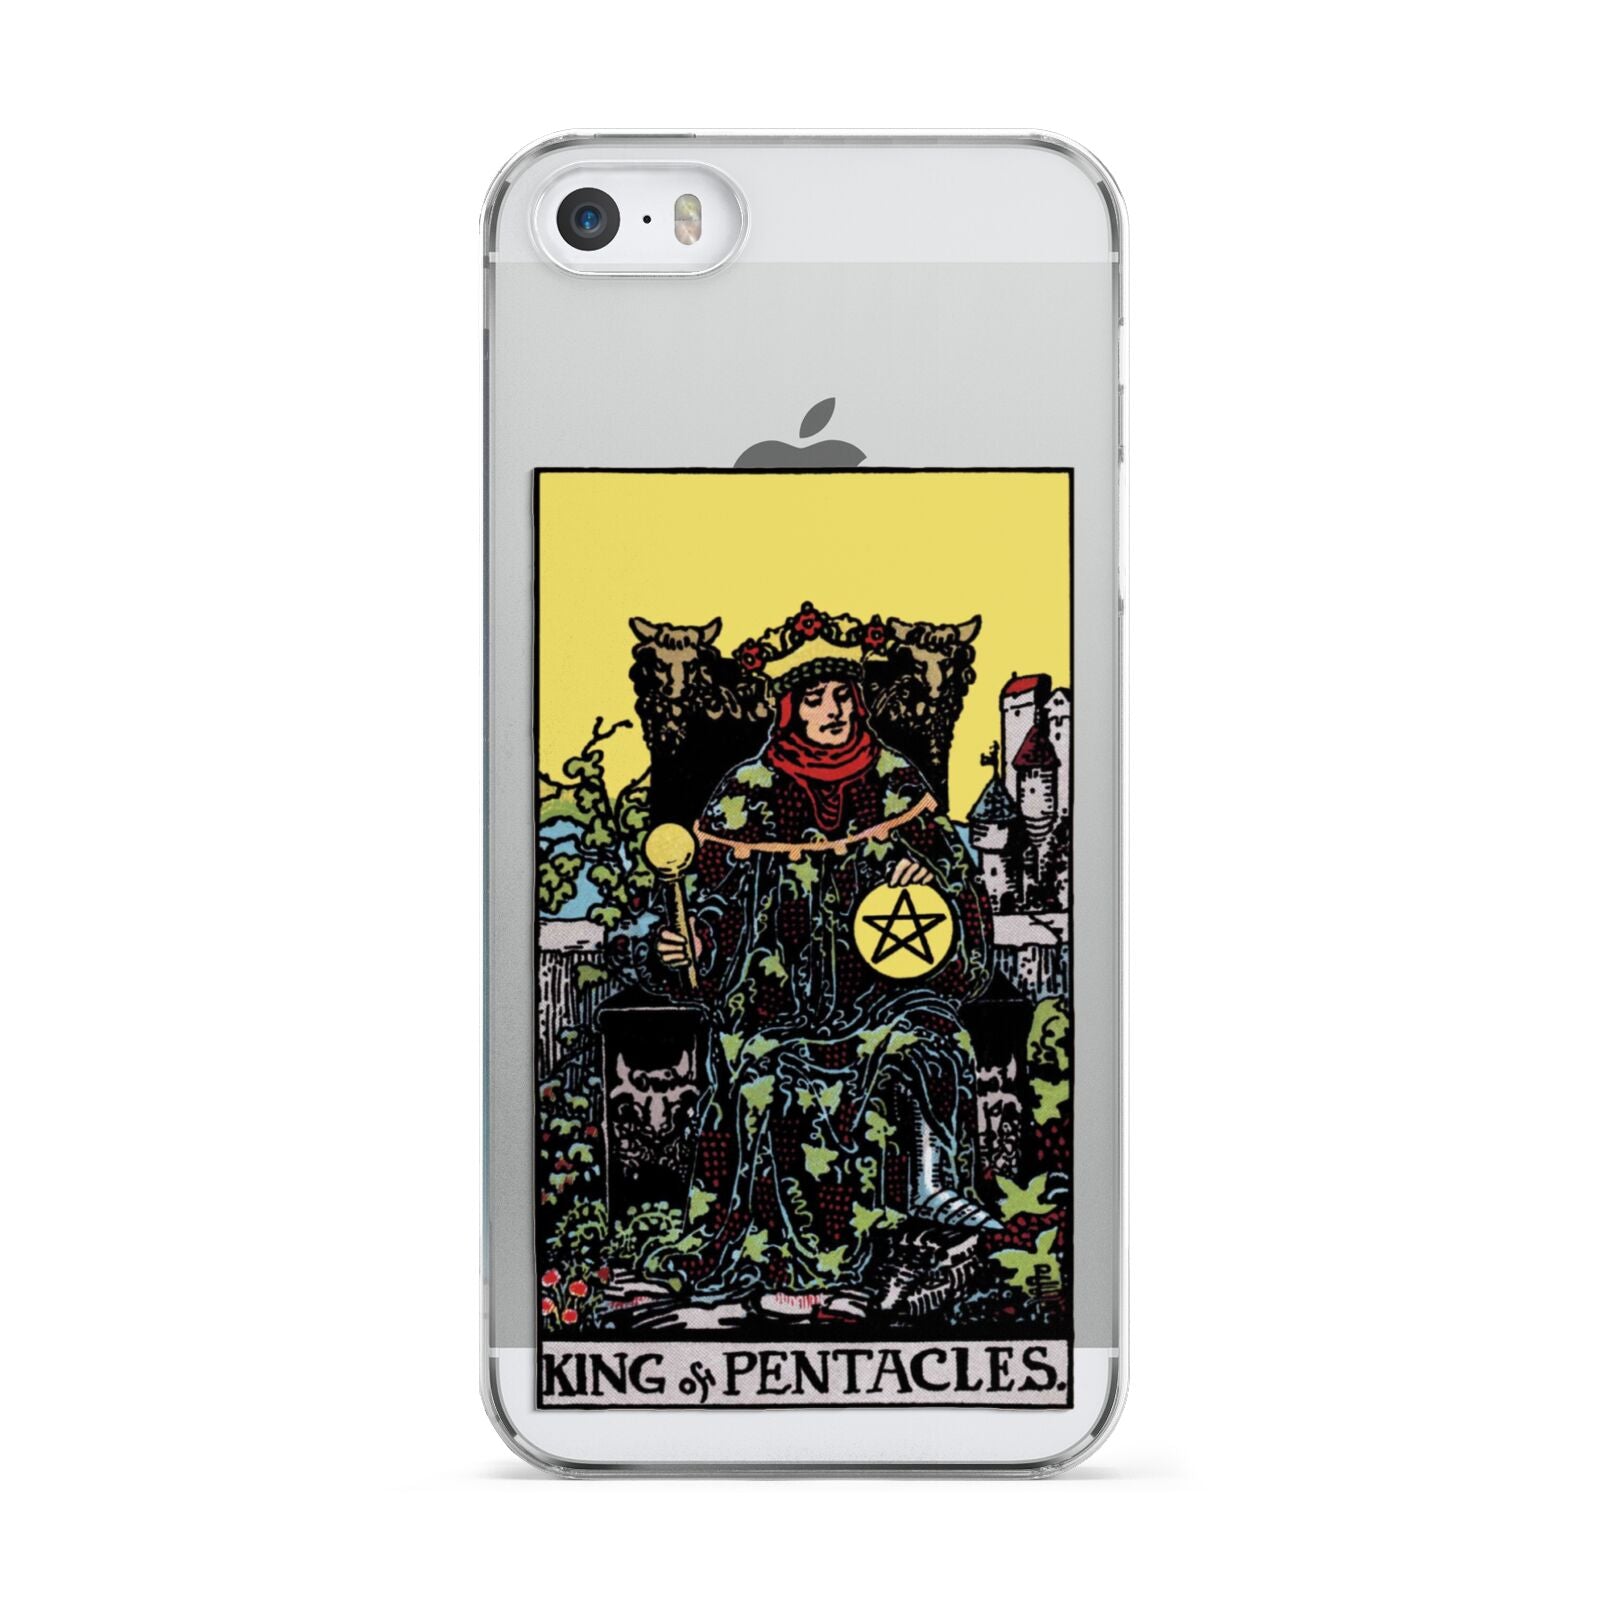 King of Pentacles Tarot Card Apple iPhone 5 Case